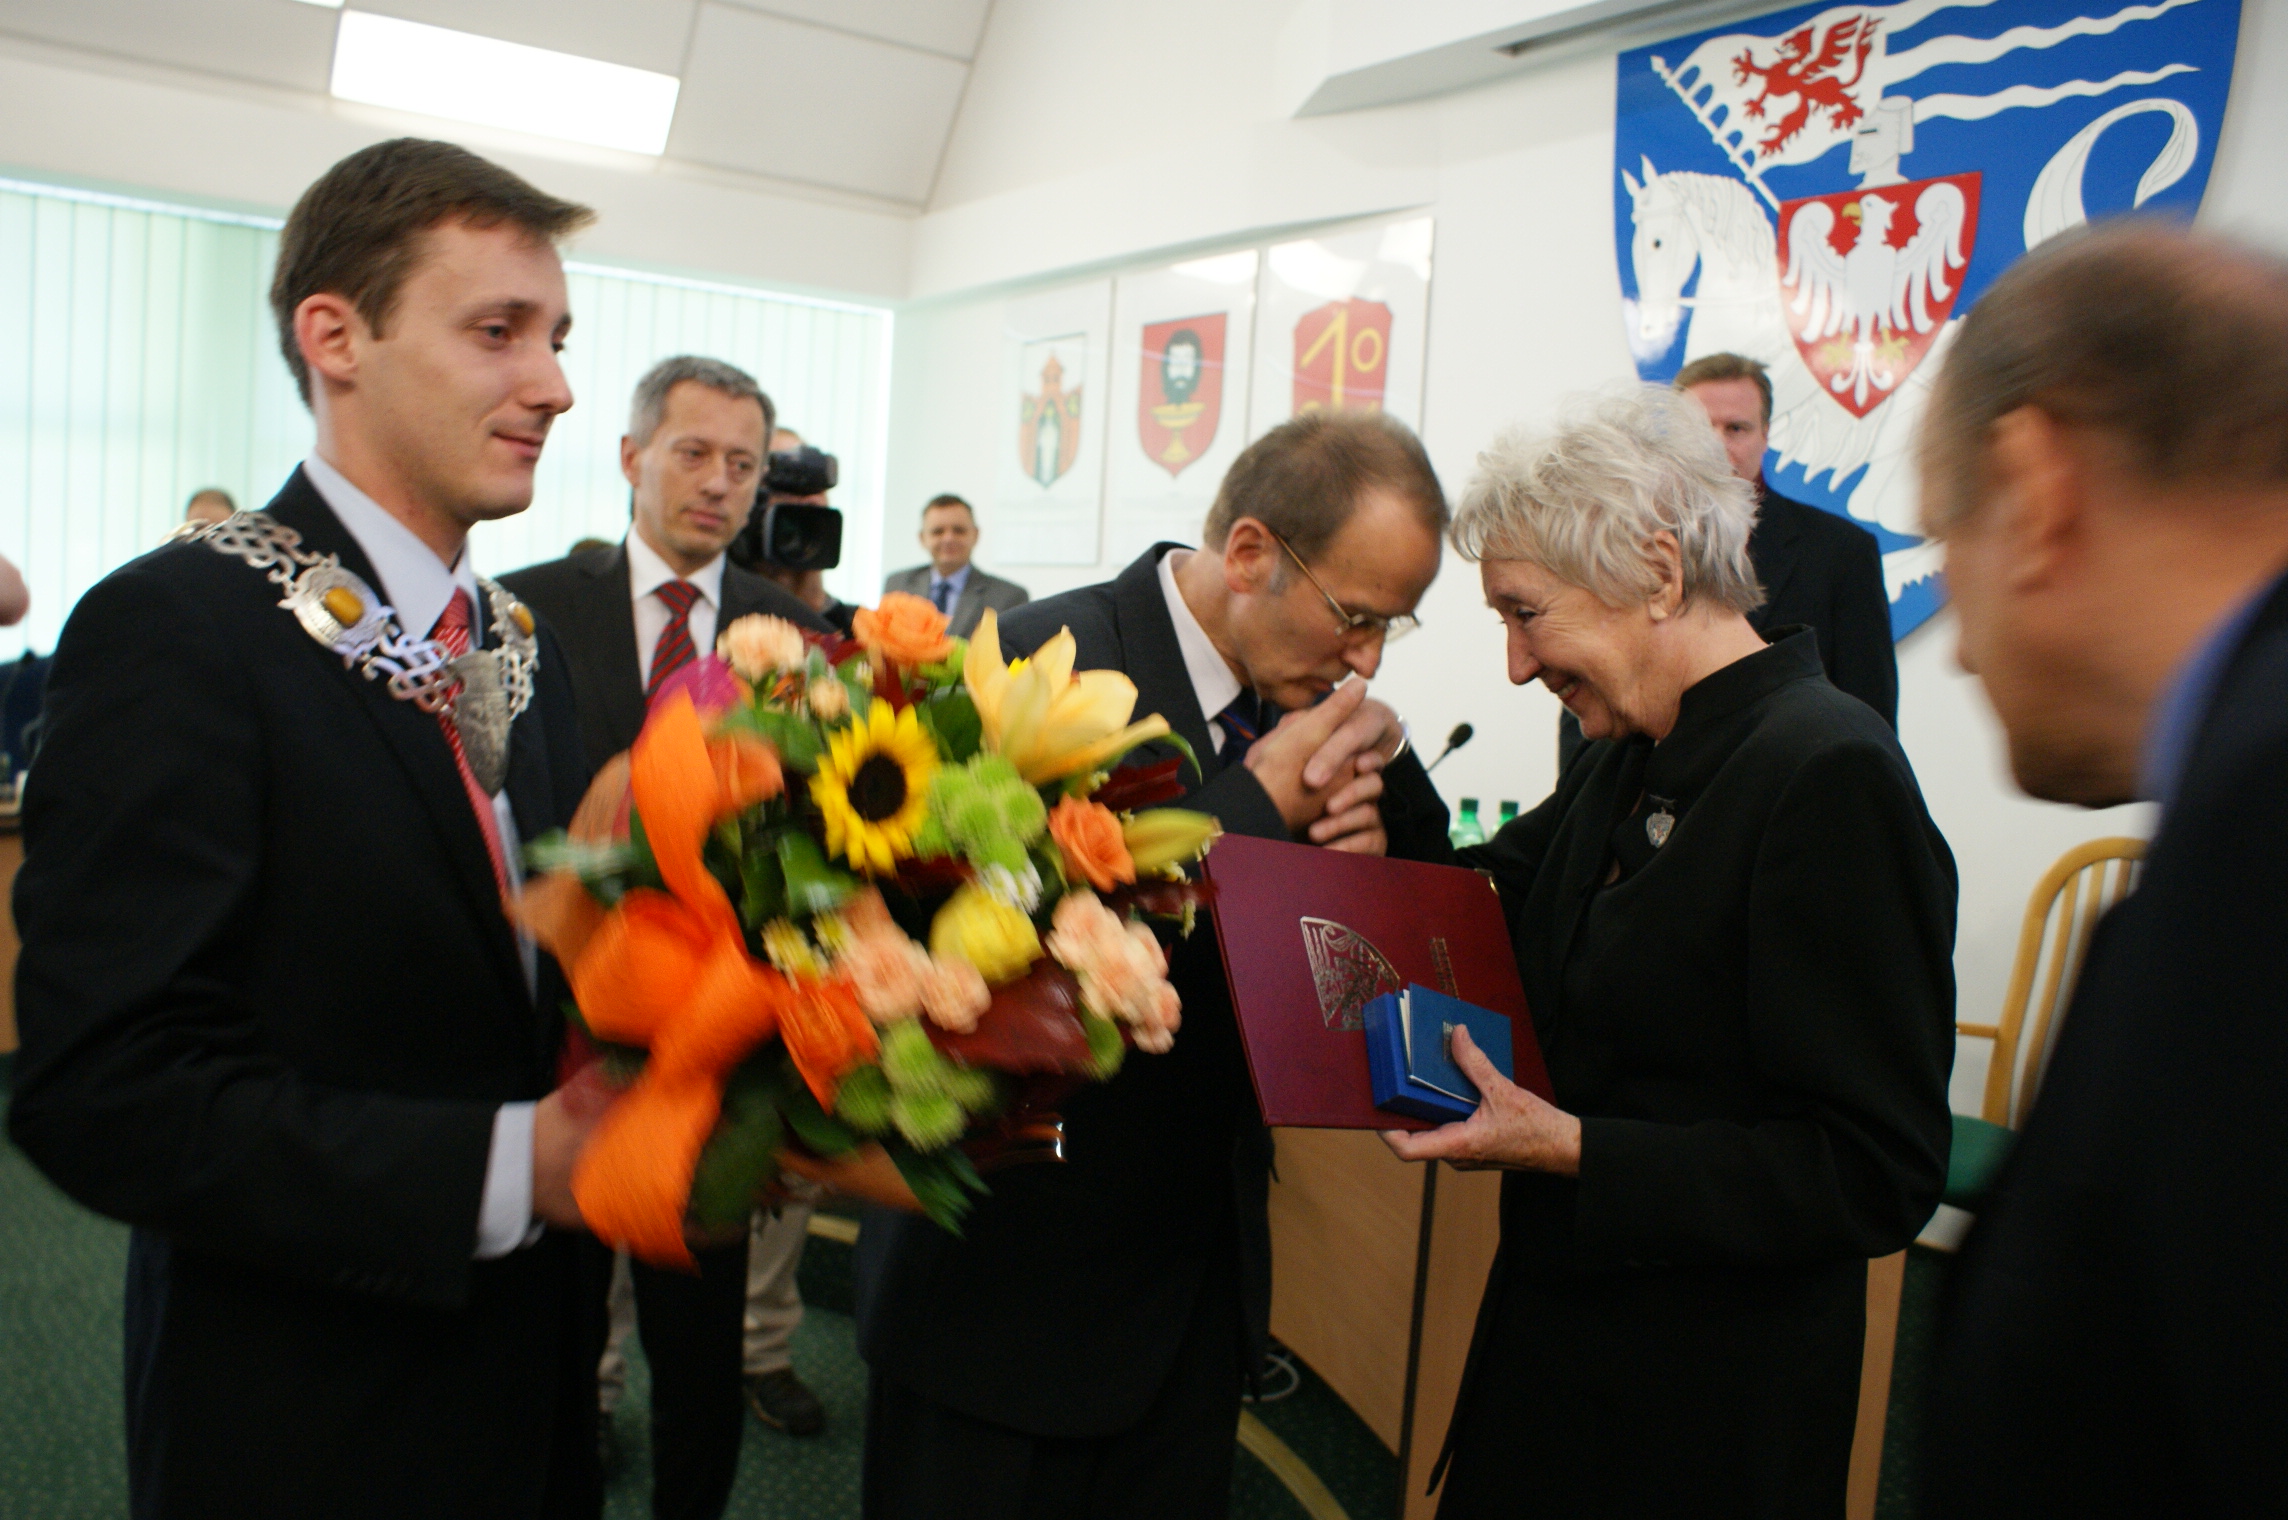 Wręczenie medalu "Za zasługi dla m. Koszalina" w 2009 roku